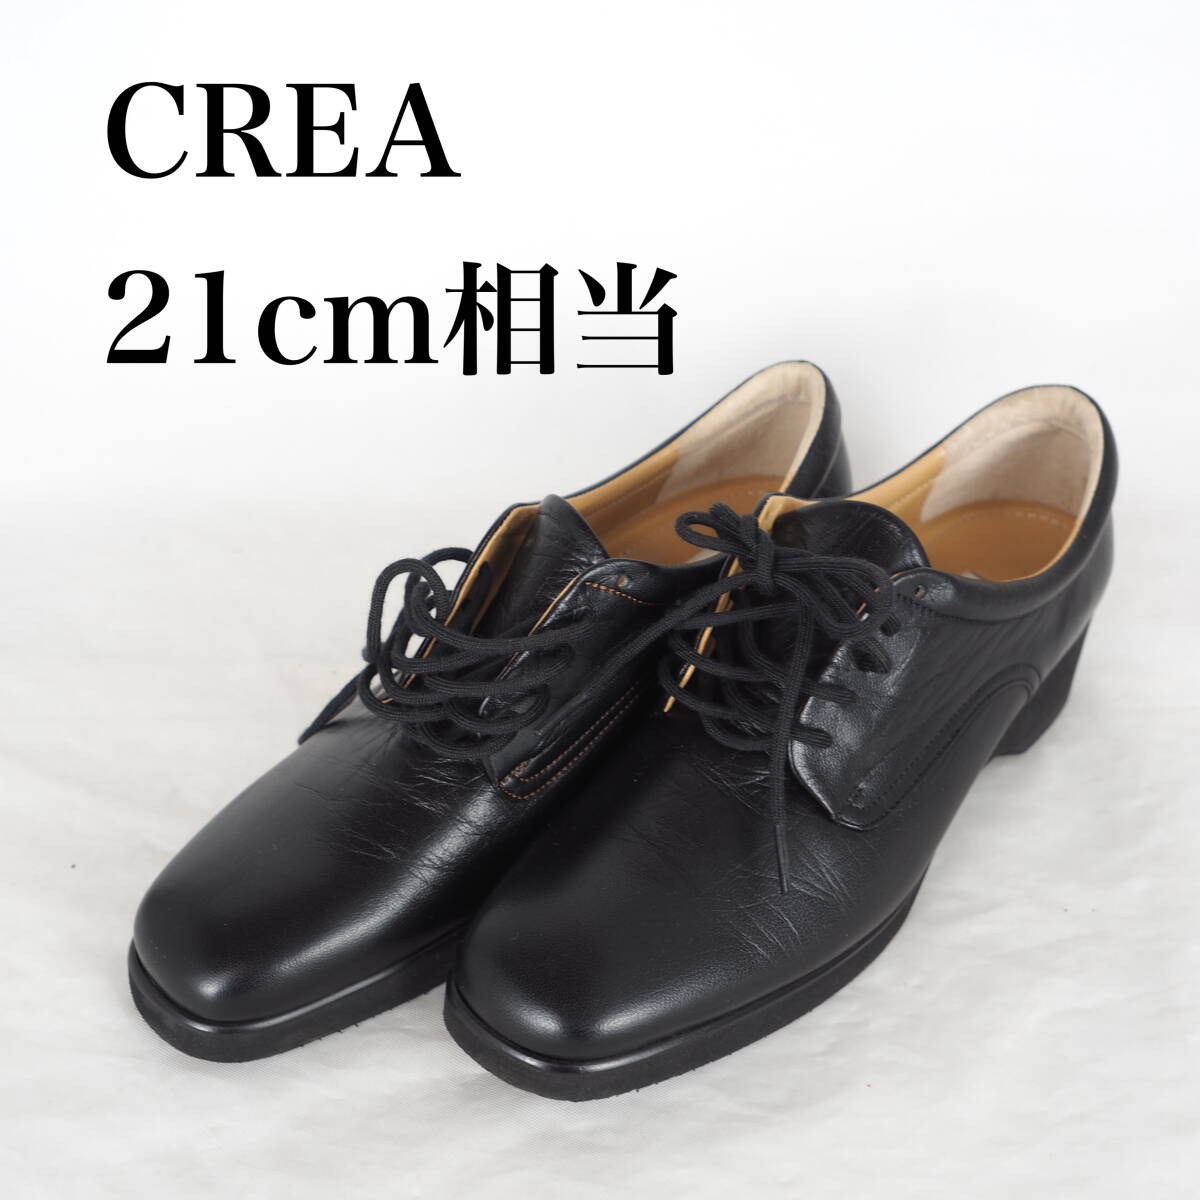 MK5218*CREA*klie* Ginza yo shino ya* lady's shoes *21cm corresponding * black 